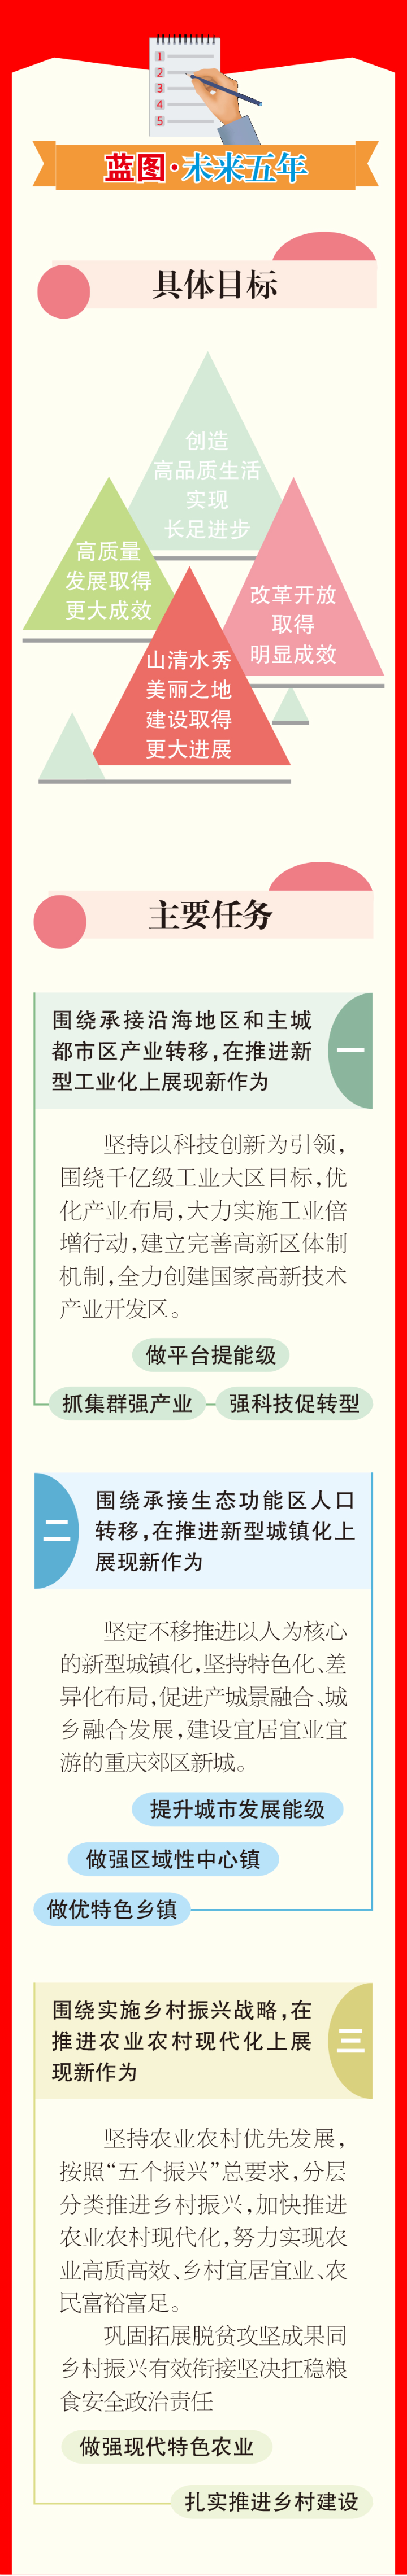 一图读懂 | 重庆市梁平区人民政府工作报告